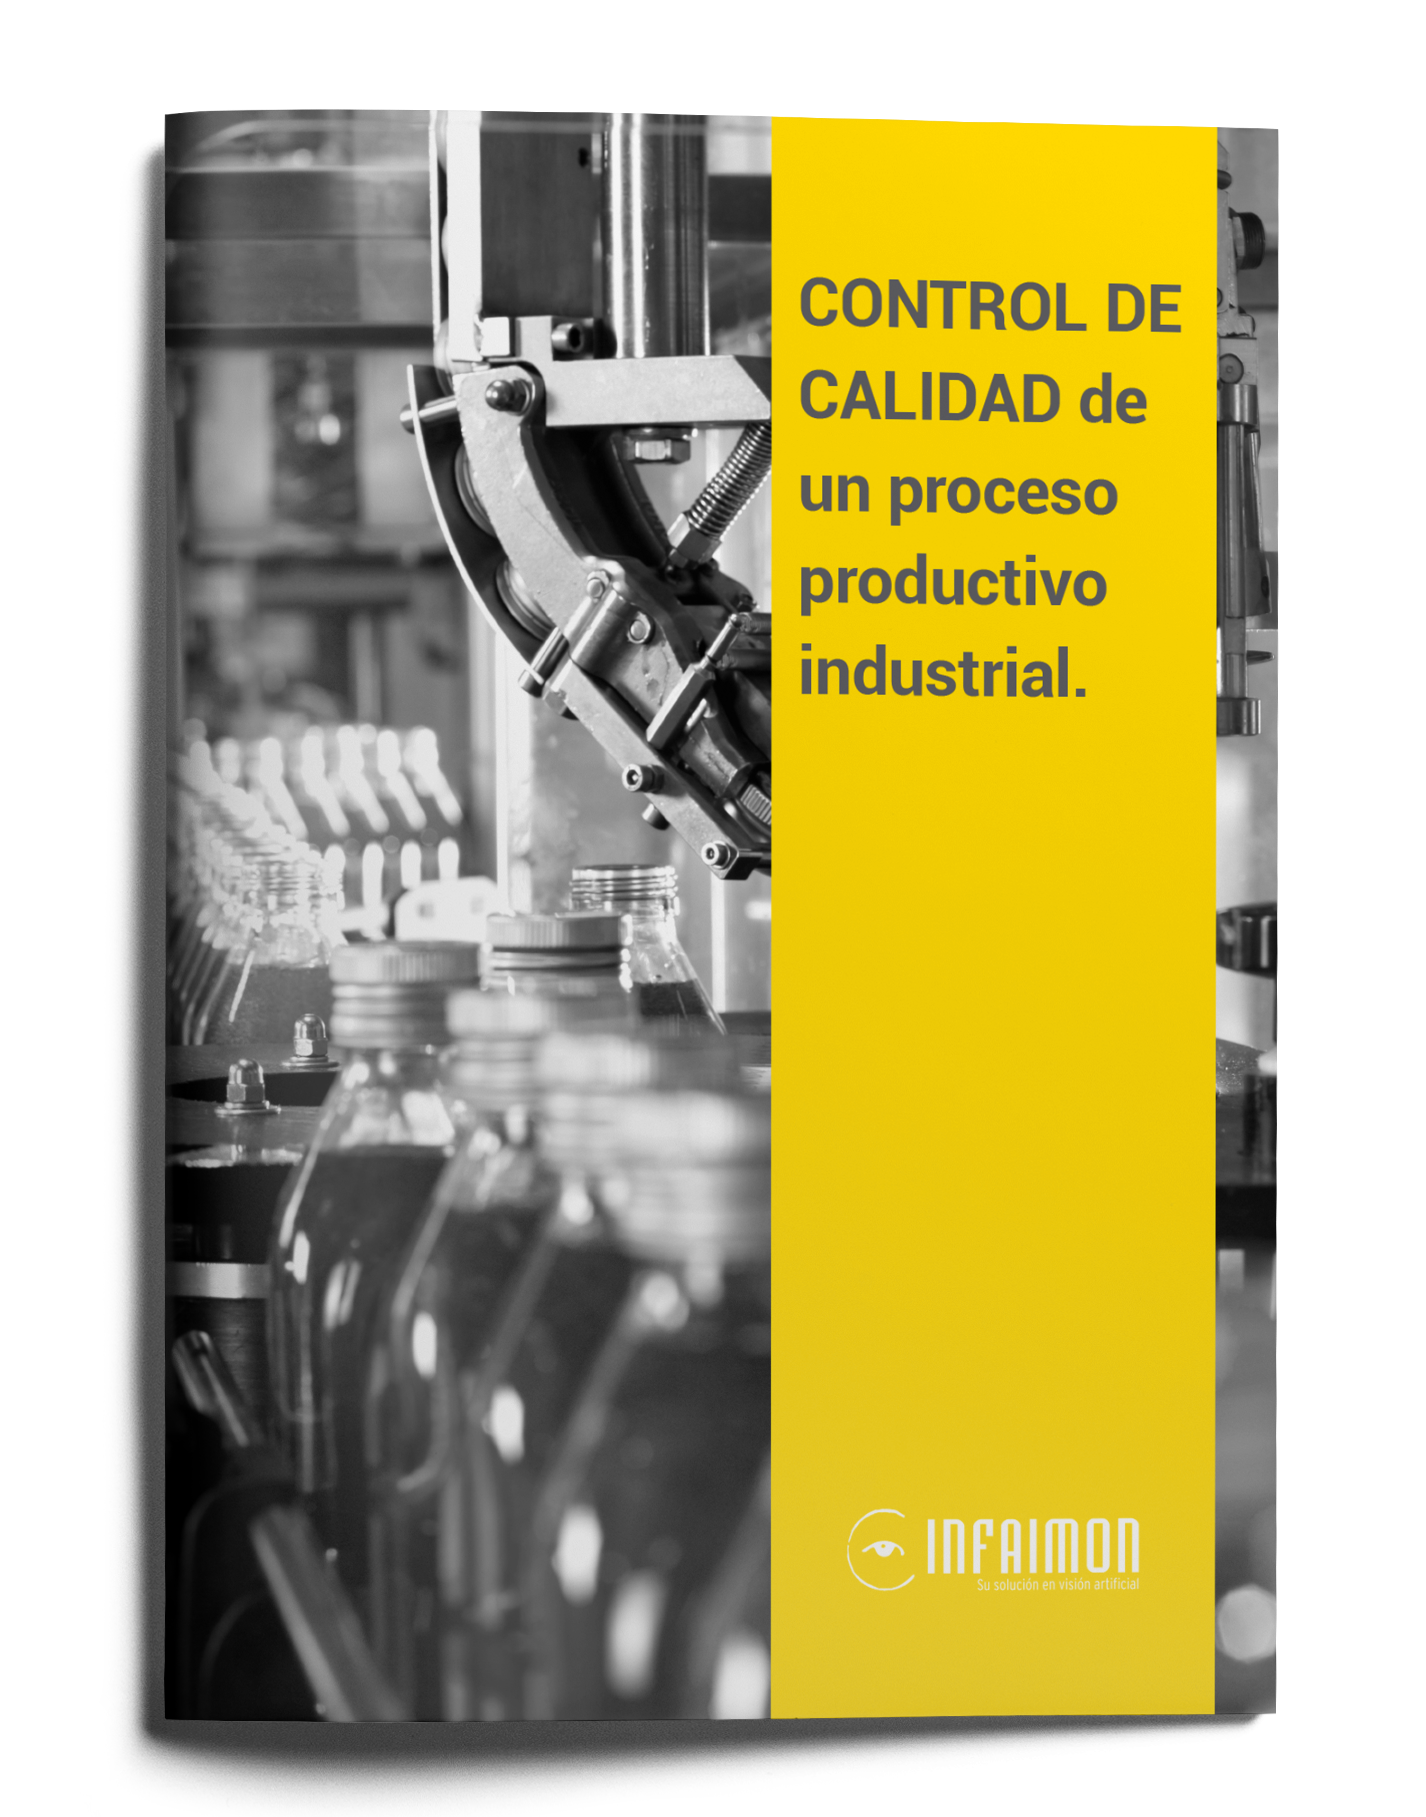 Control de calidad de un proceso productivo industrial